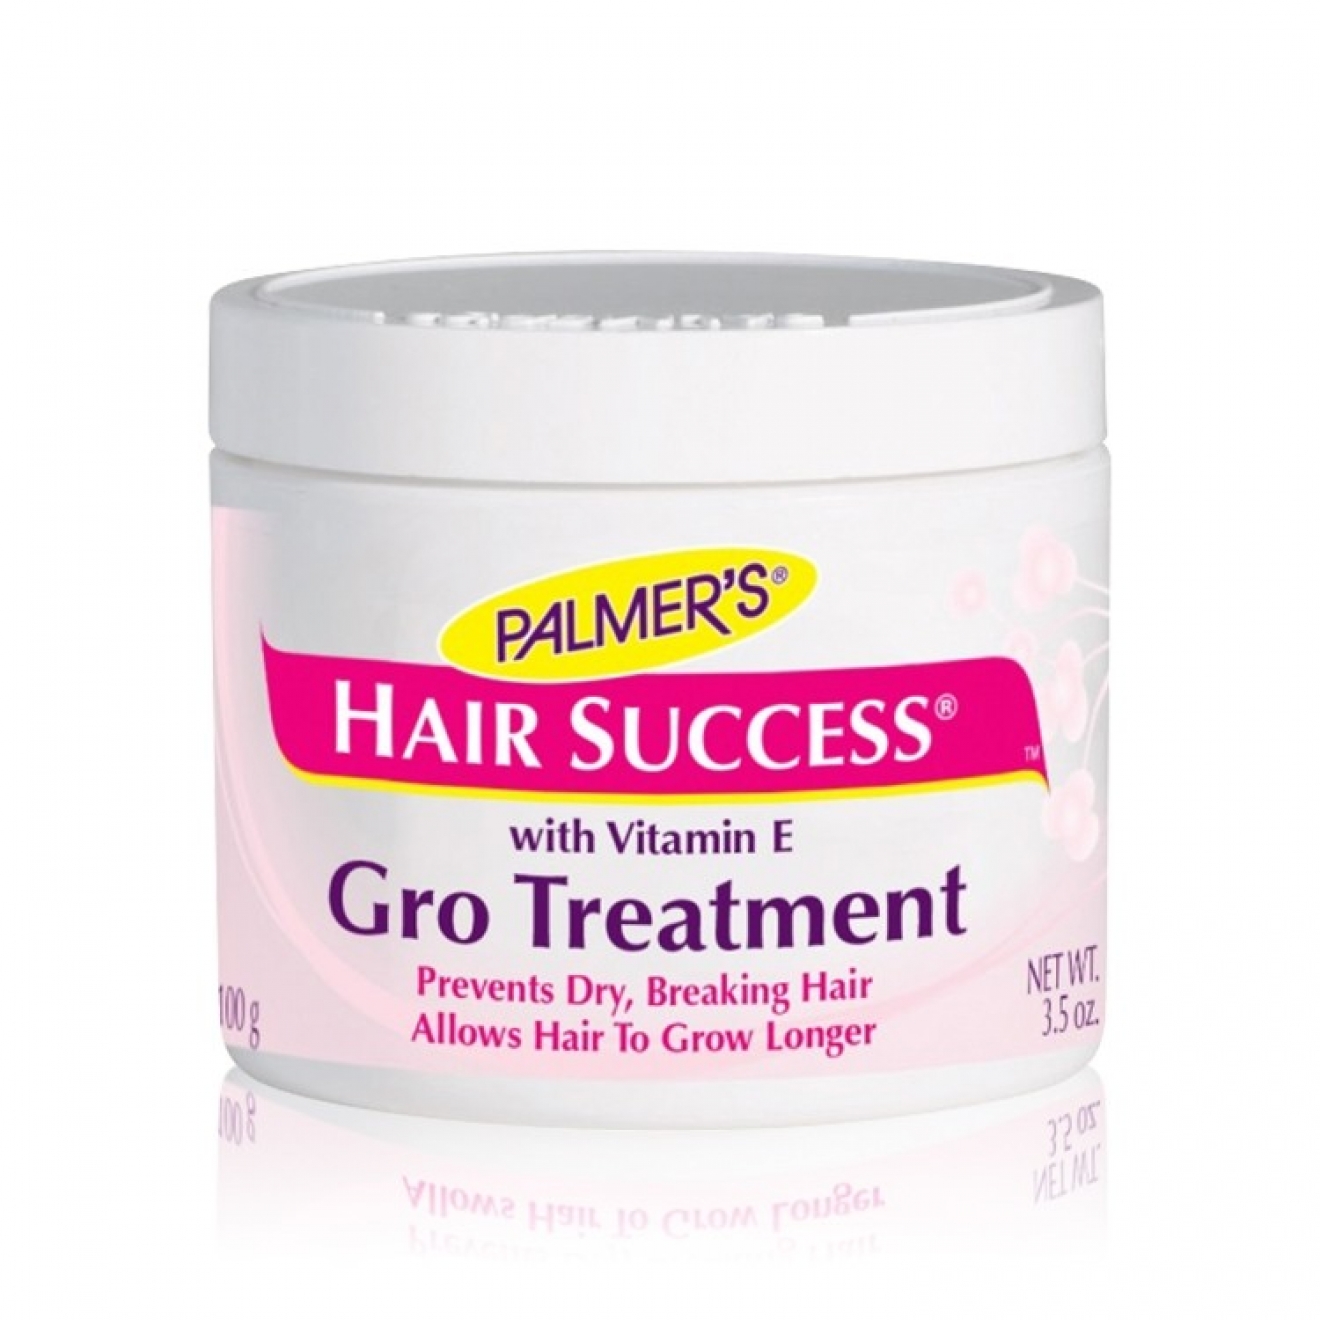 Mască hidratantă pentru păr , Palmers, Hair Success, Gro Treatment, 100 g